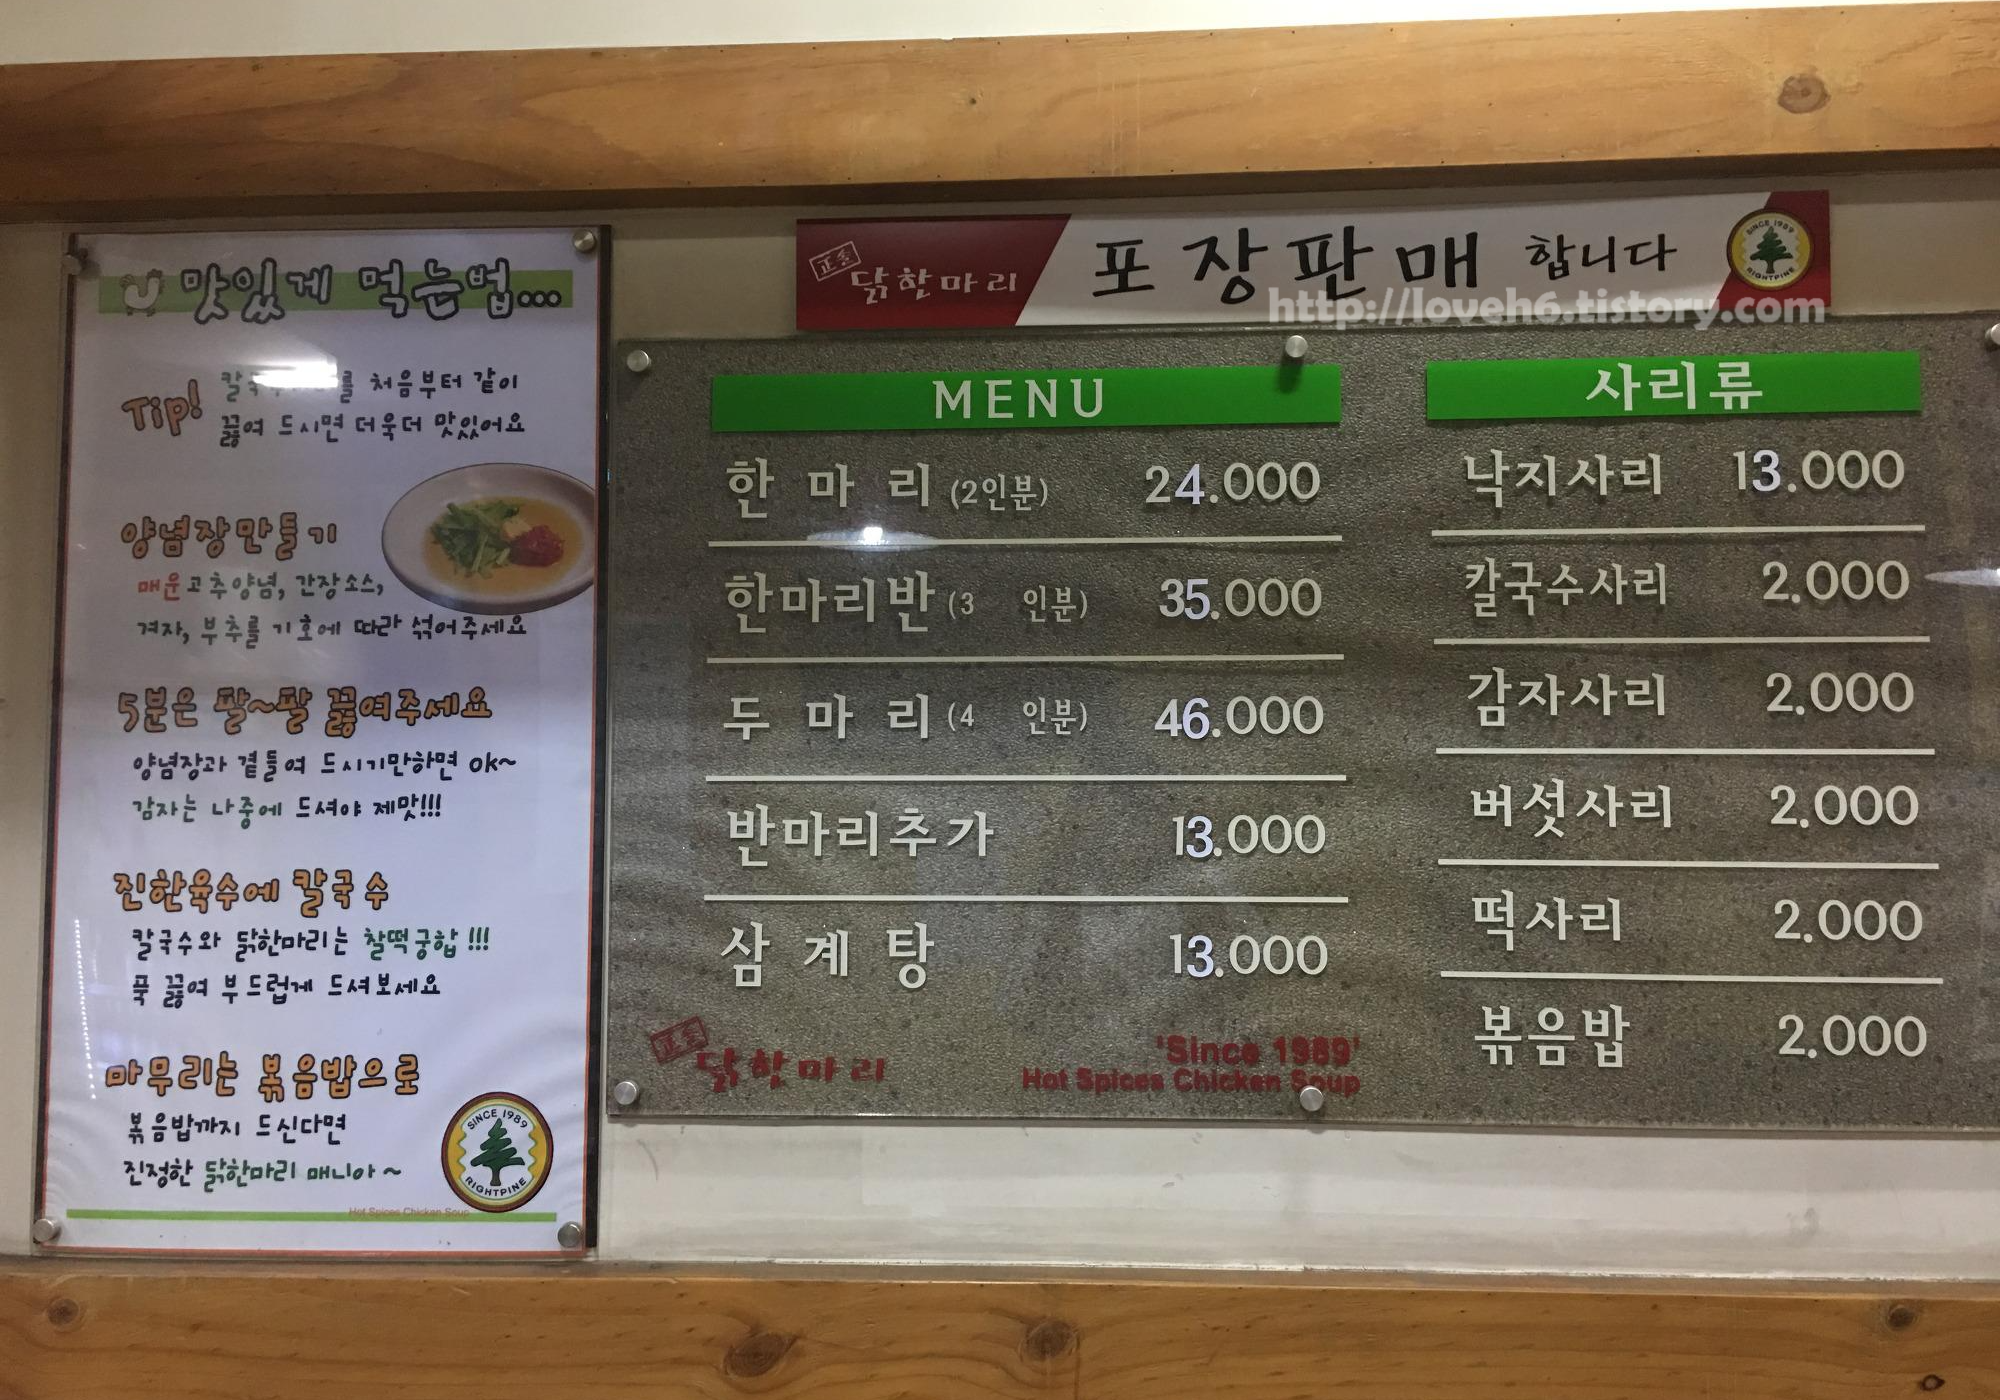 
정솔 닭한마리 영등포 본점/Jeongsol Chicken Hanmari,Yeongdeungpo Main Branch/ 한마리(2인분)24,000원/한마리 반(3인분)35,000원/두 마리(4인분)46,000원/반마리 추가 13,000원/삼계탕 13,000원/낙지사리 13,000원/칼국수 사리2,000원/감자 사리2,000원/버섯 사리2,000원/떡 사리2,000원/볶음밥2,000원/ 맛있게 먹는법-칼국수를 처음부터 같이 끓ㄹ여 드시면 더욱더 맛있어요/양념장 만들기 매운 고추양념,강장소스,겨자,부추를 기호에 따라 섞어주세요/5분은 팔팔 끓여주세요 양념장과 곁들여 드시기만하면 오케이~ 감자는 나중에 드셔야 제맛!!!/진한육수에 칼국수 칼국수와 닭한마리는 찰떡궁합!!! 푹 끓여 부드럽게 드셔보세요/마무리는 볶음밥으로 볶음밥까지 드신다면 진정한 닭한마리 매니아/ 참고하세요